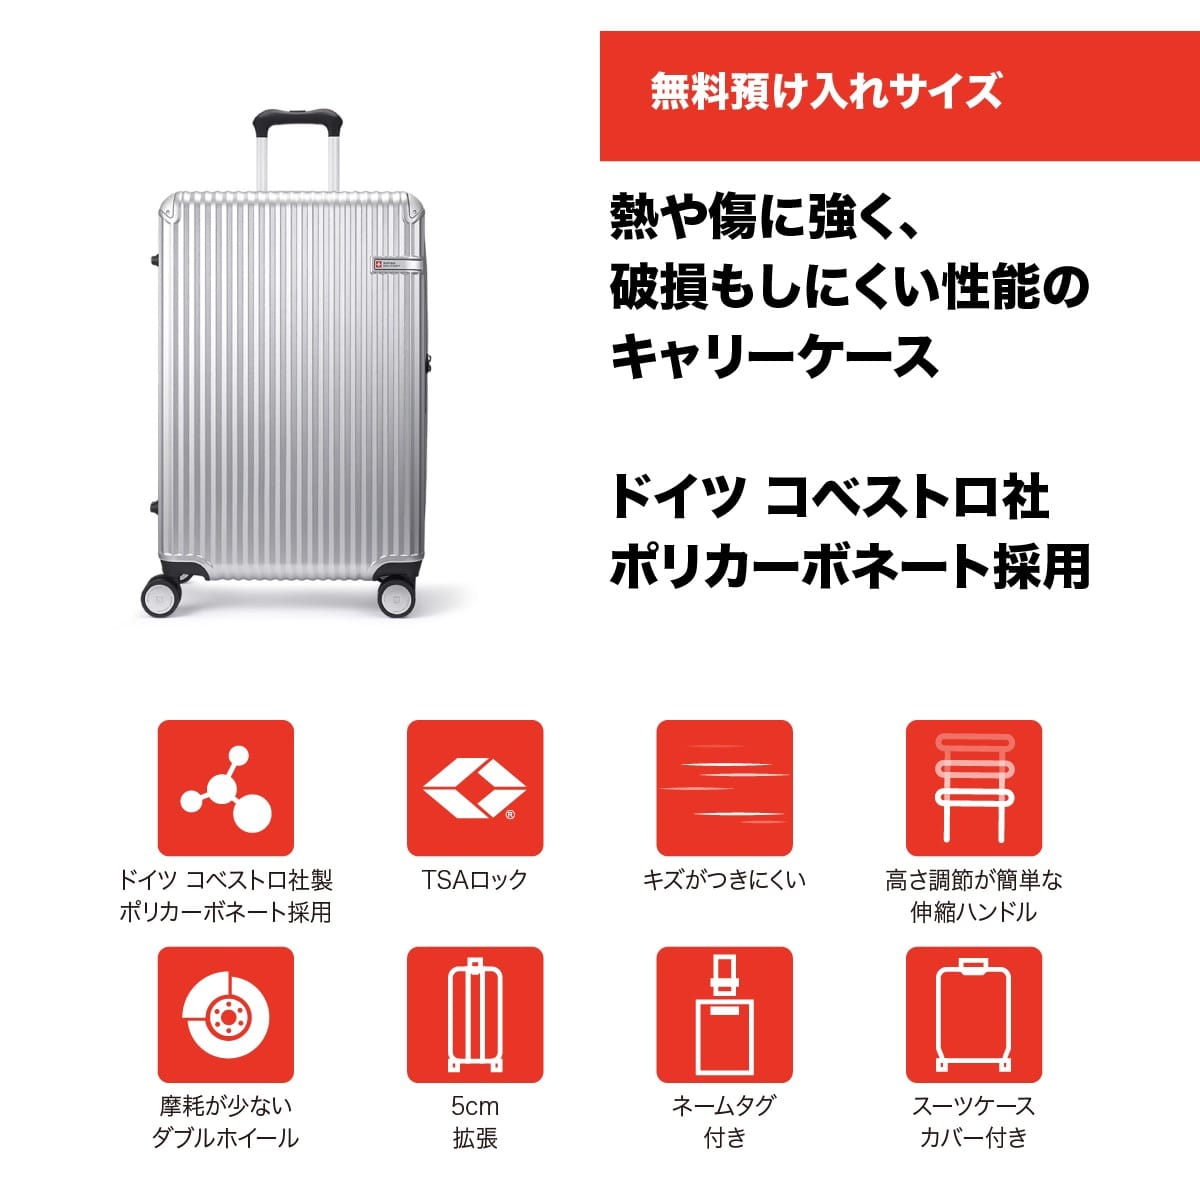 スーツケース 大型 Lサイズ 一週間以上 71cm 83L 5cm拡張 TSAロック